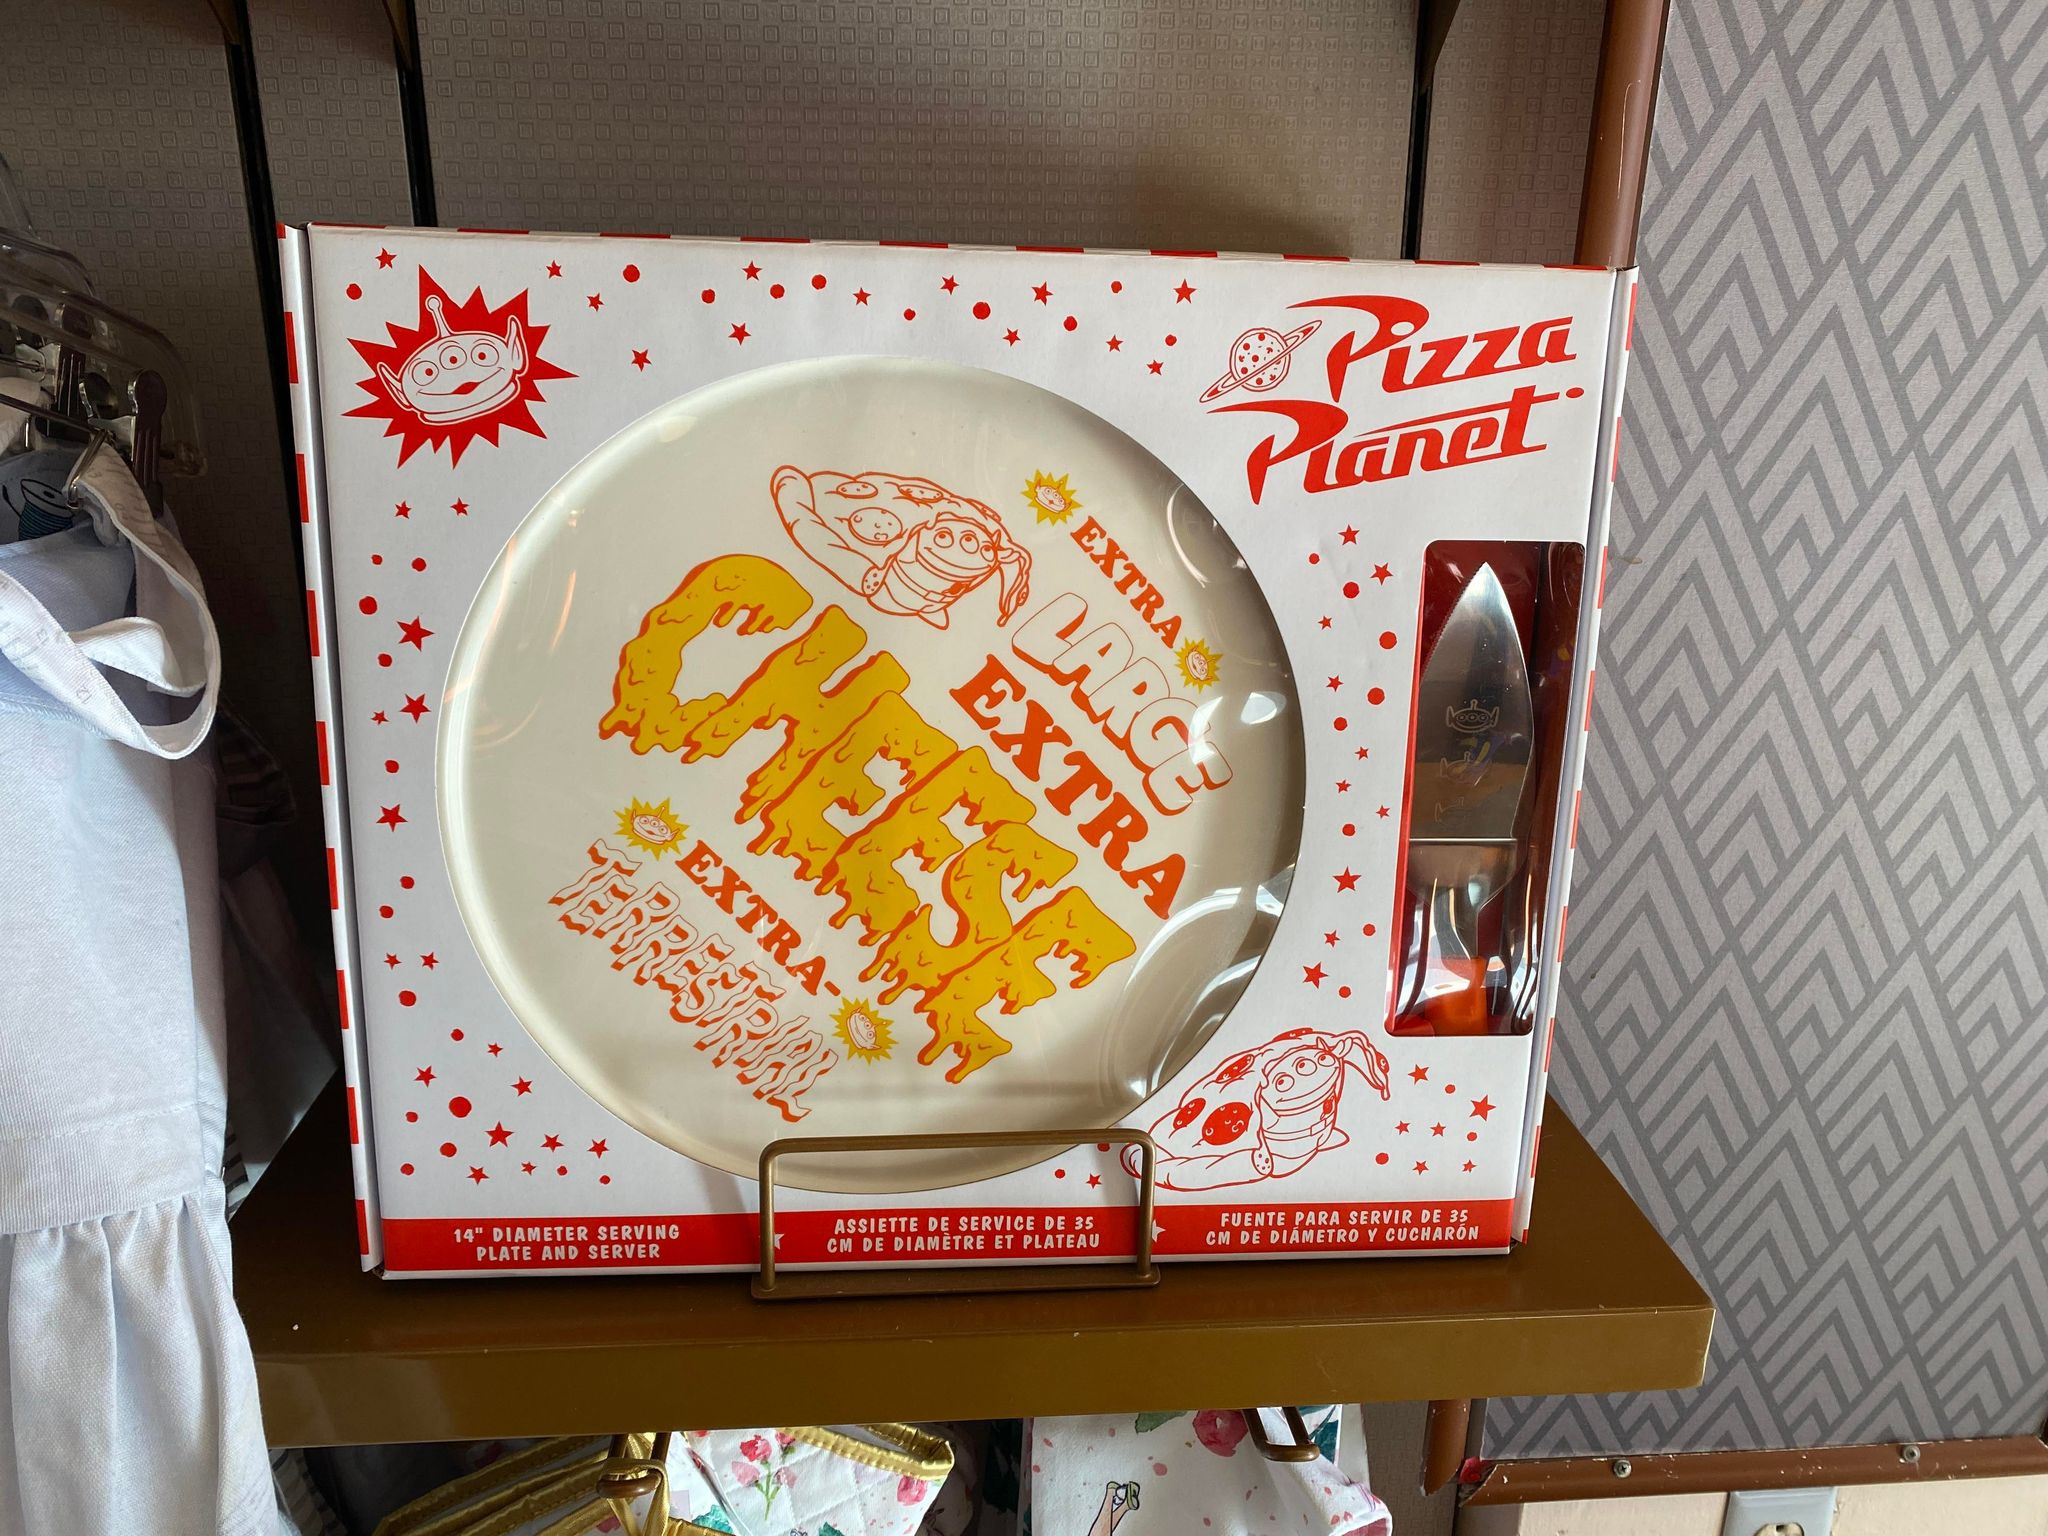 pizza planet set